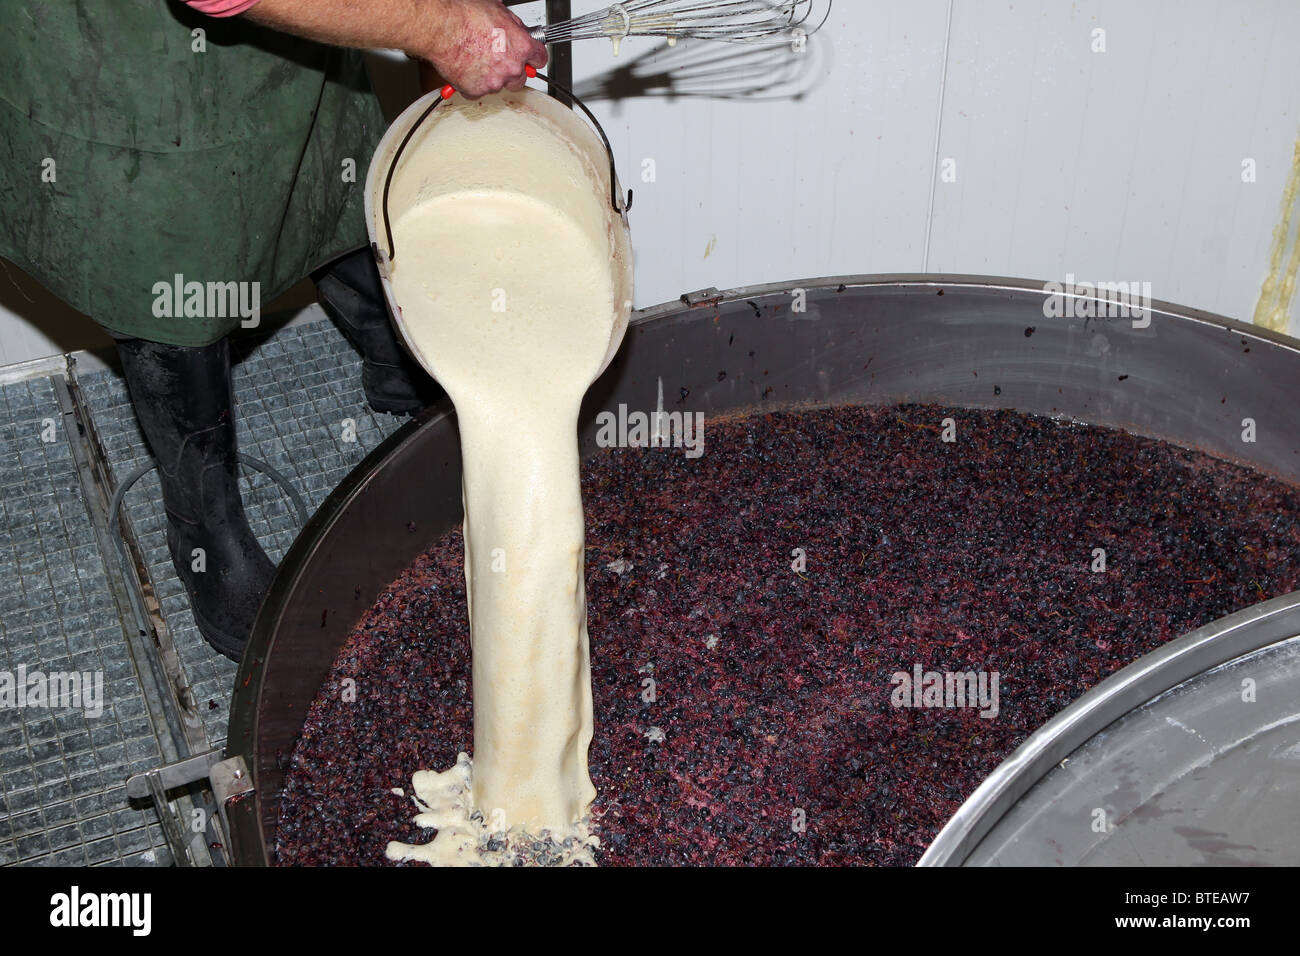 Verser la levure dans un bac contenant des raisins écrasés dans le processus de diffusion de vin rouge. Banque D'Images